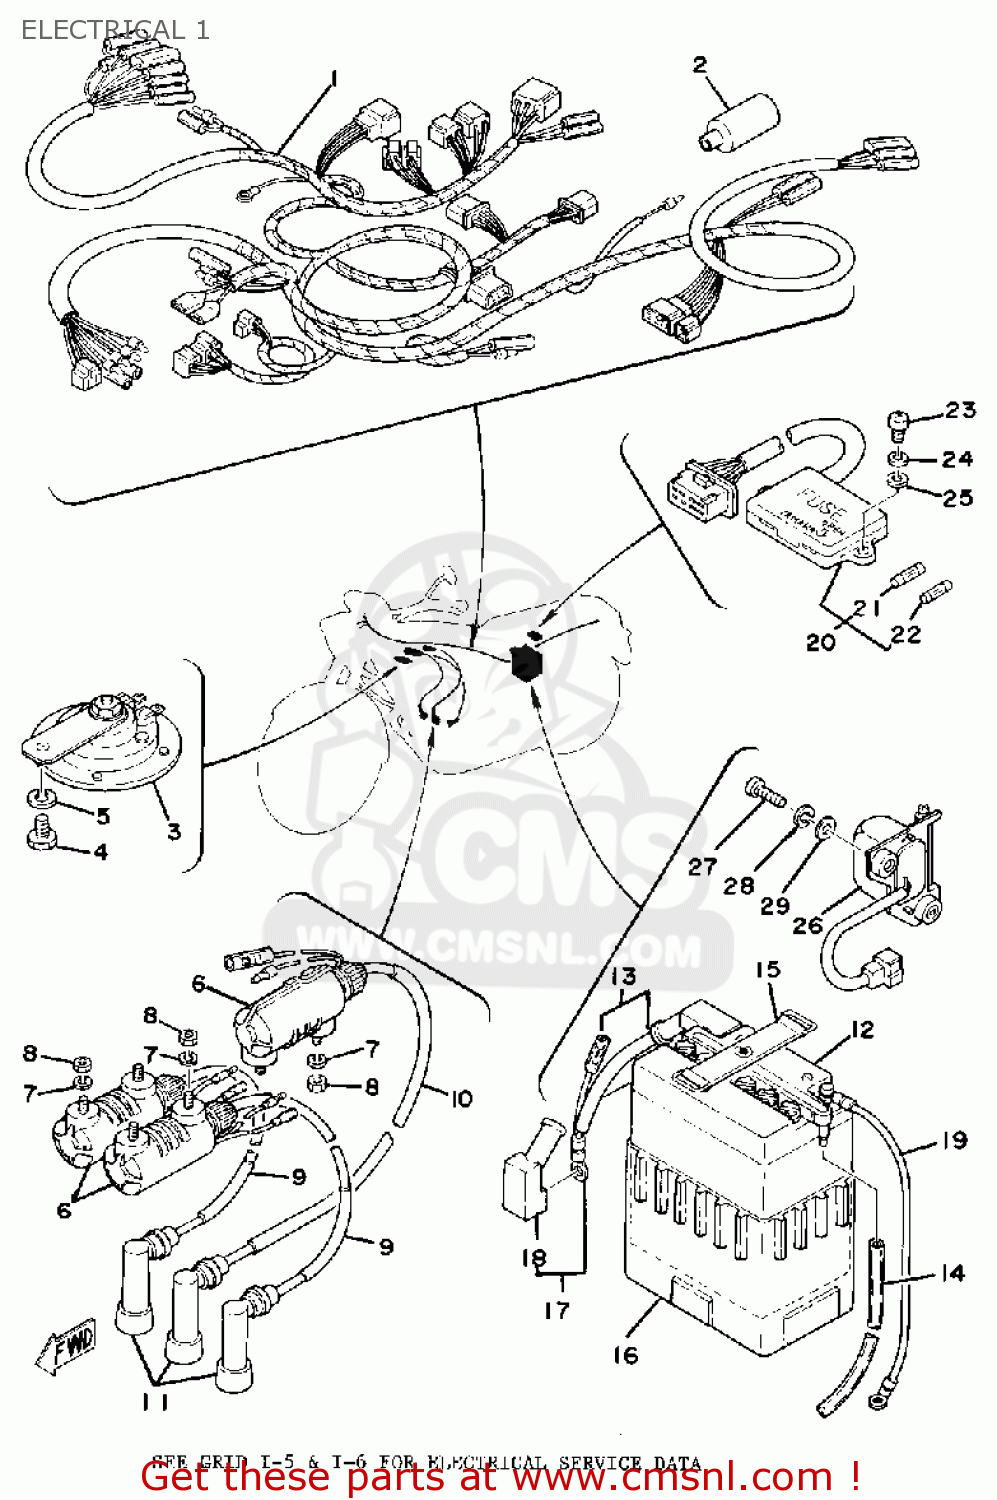 xs750 wiring diagram